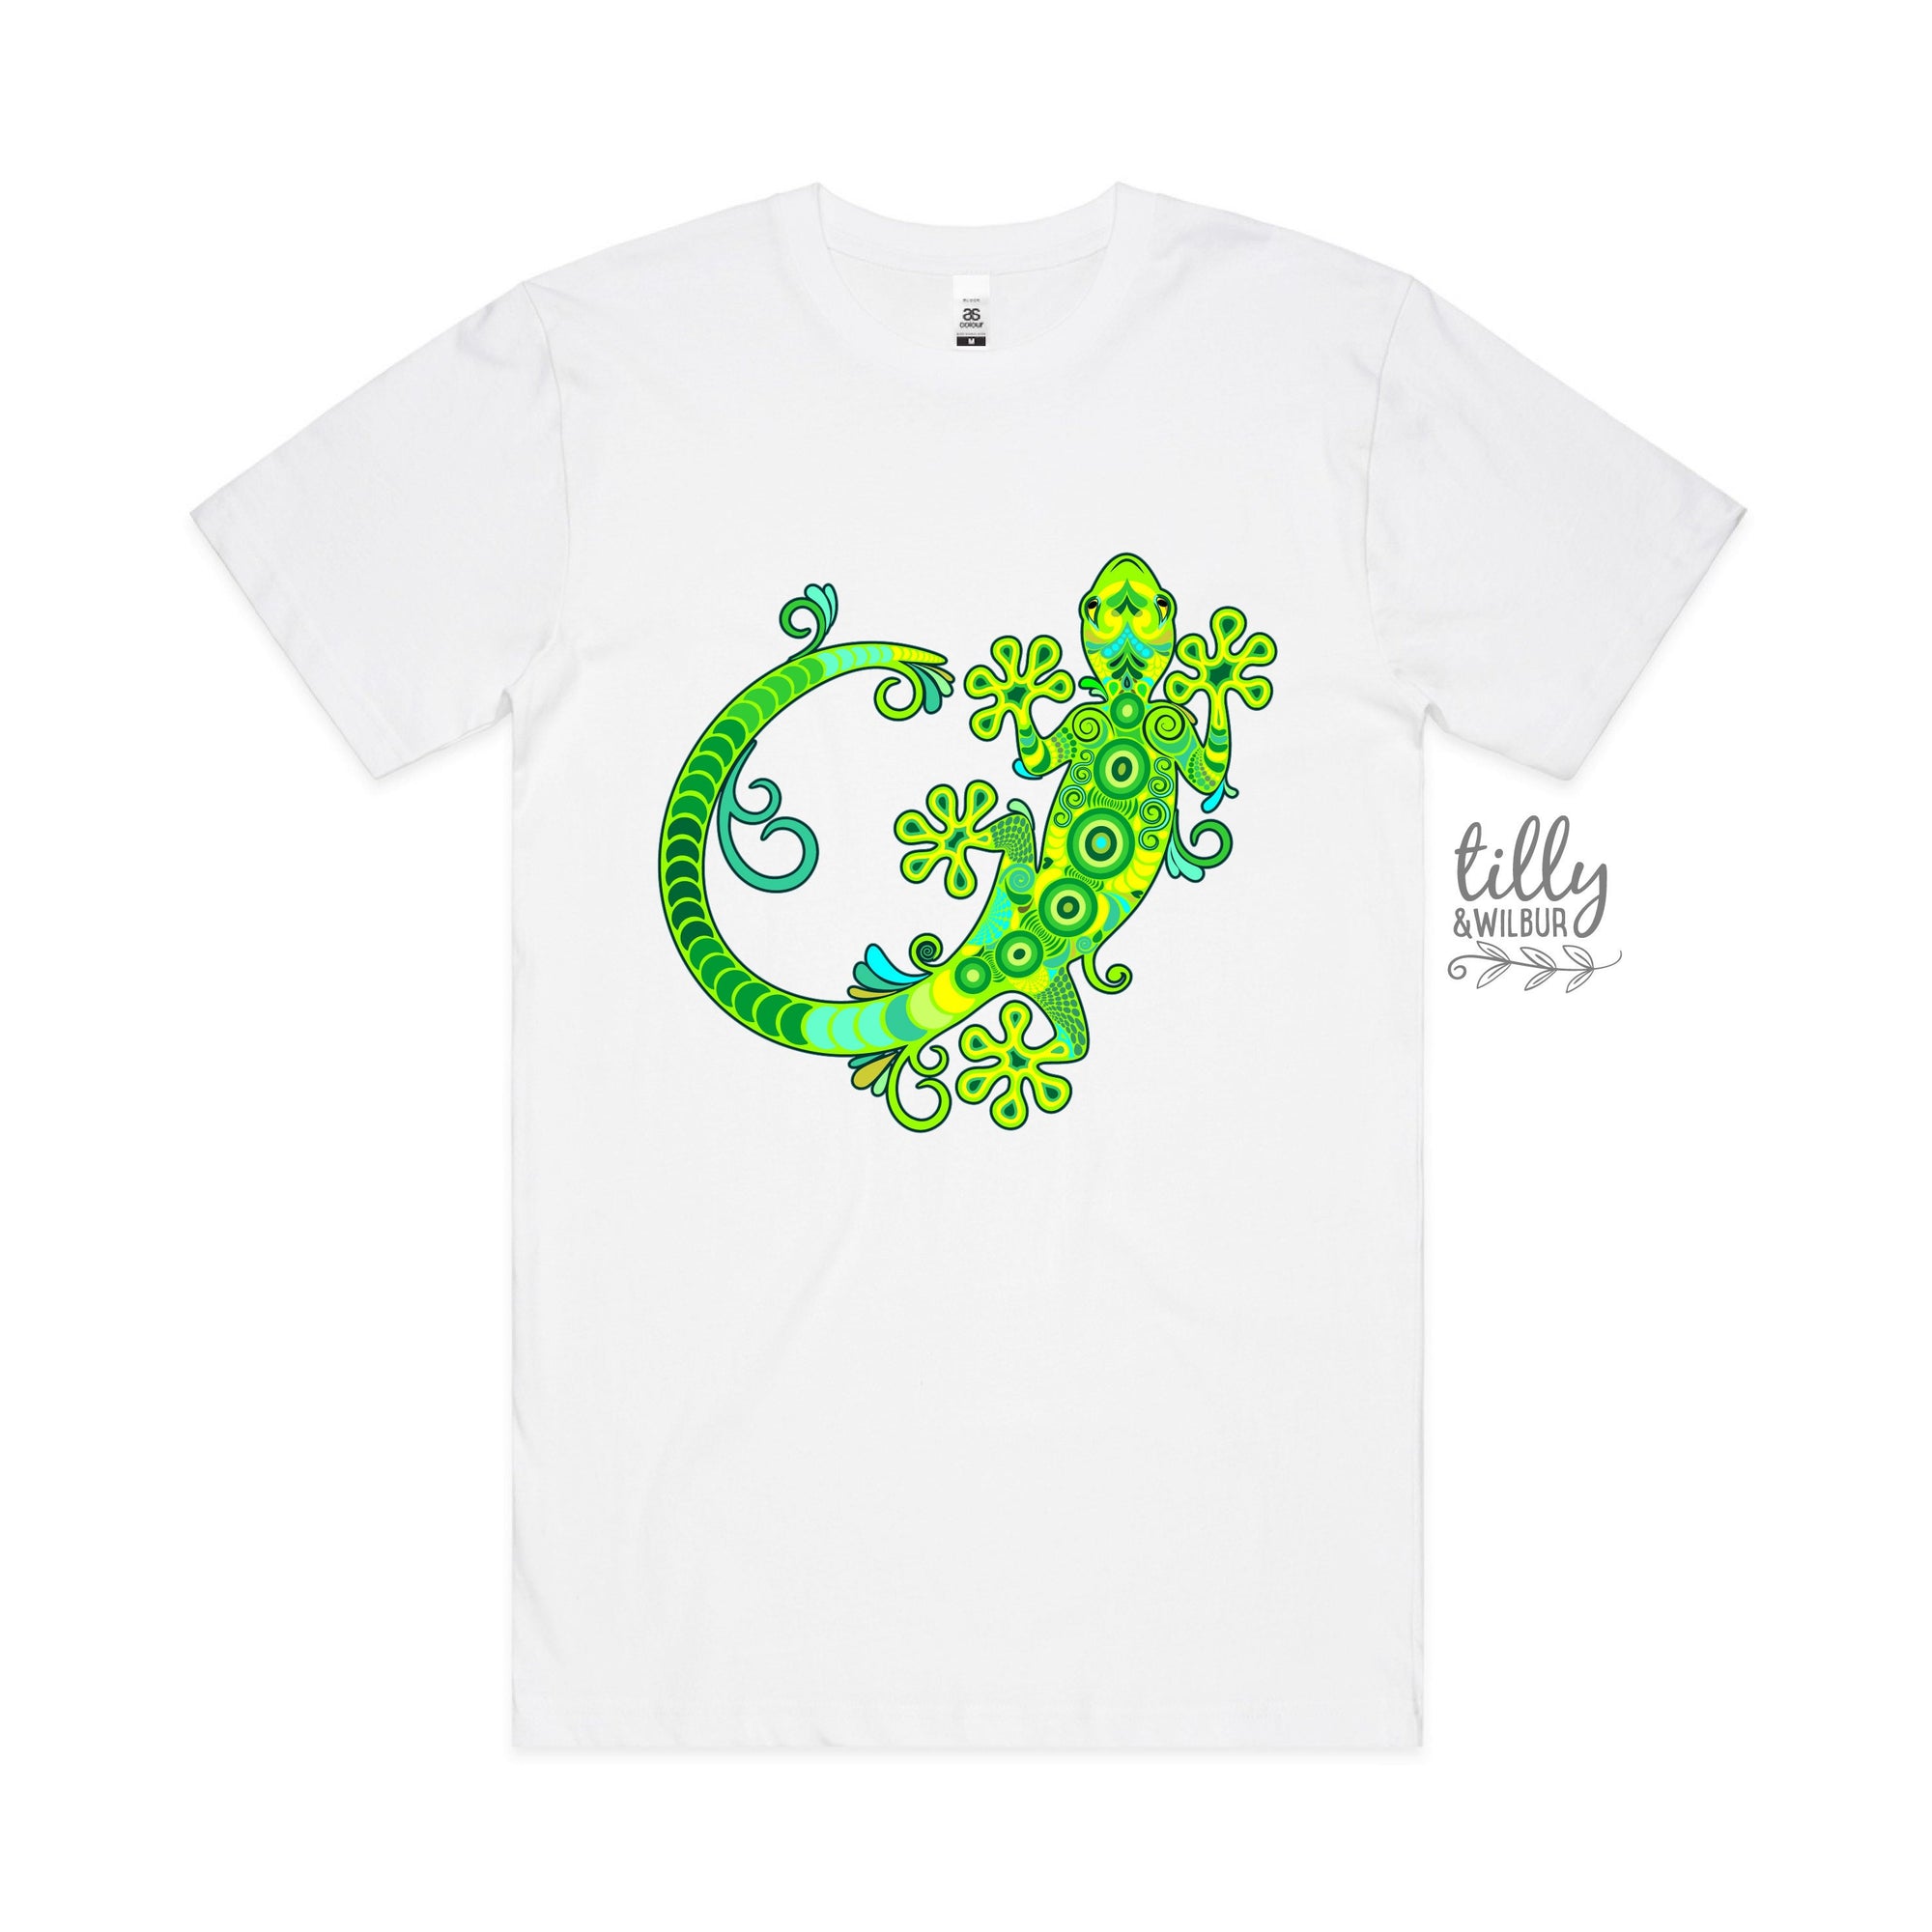 Gecko T-Shirt, Gecko Lover T-Shirt, Lizard T-Shirt, Lizard Lover T-Shirt, Men's Gecko T-Shirt, Gecko Lover Gift, Gecko Gift, Cute Gecko